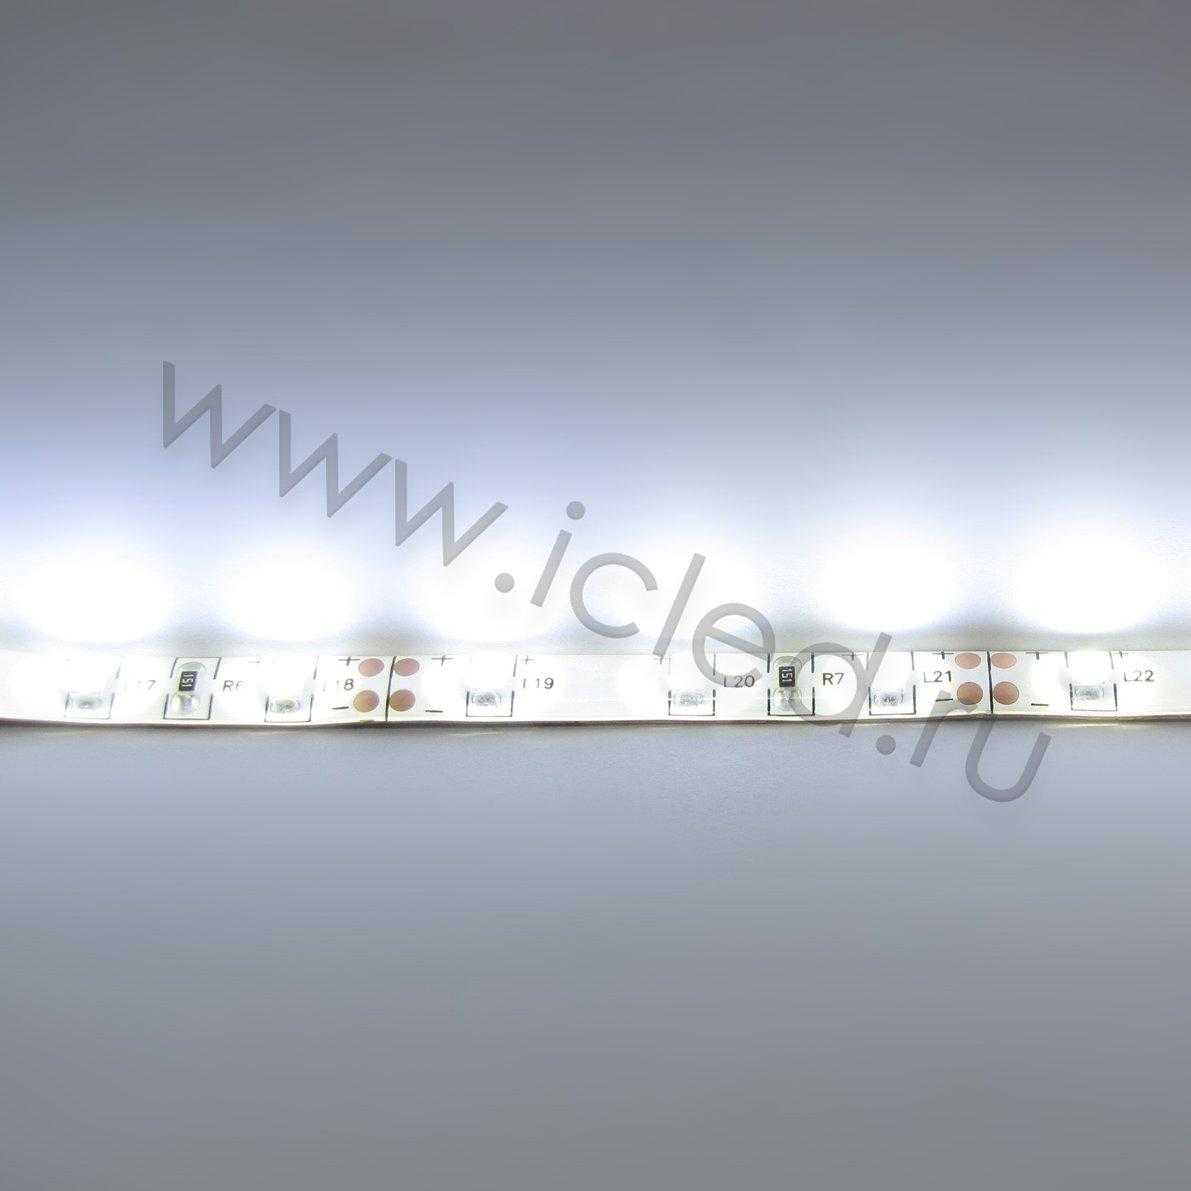 Влагозащищенные светодиодные ленты Светодиодная лента LUX class, 3528, 60 led/m, White,12V, IP65 Icled